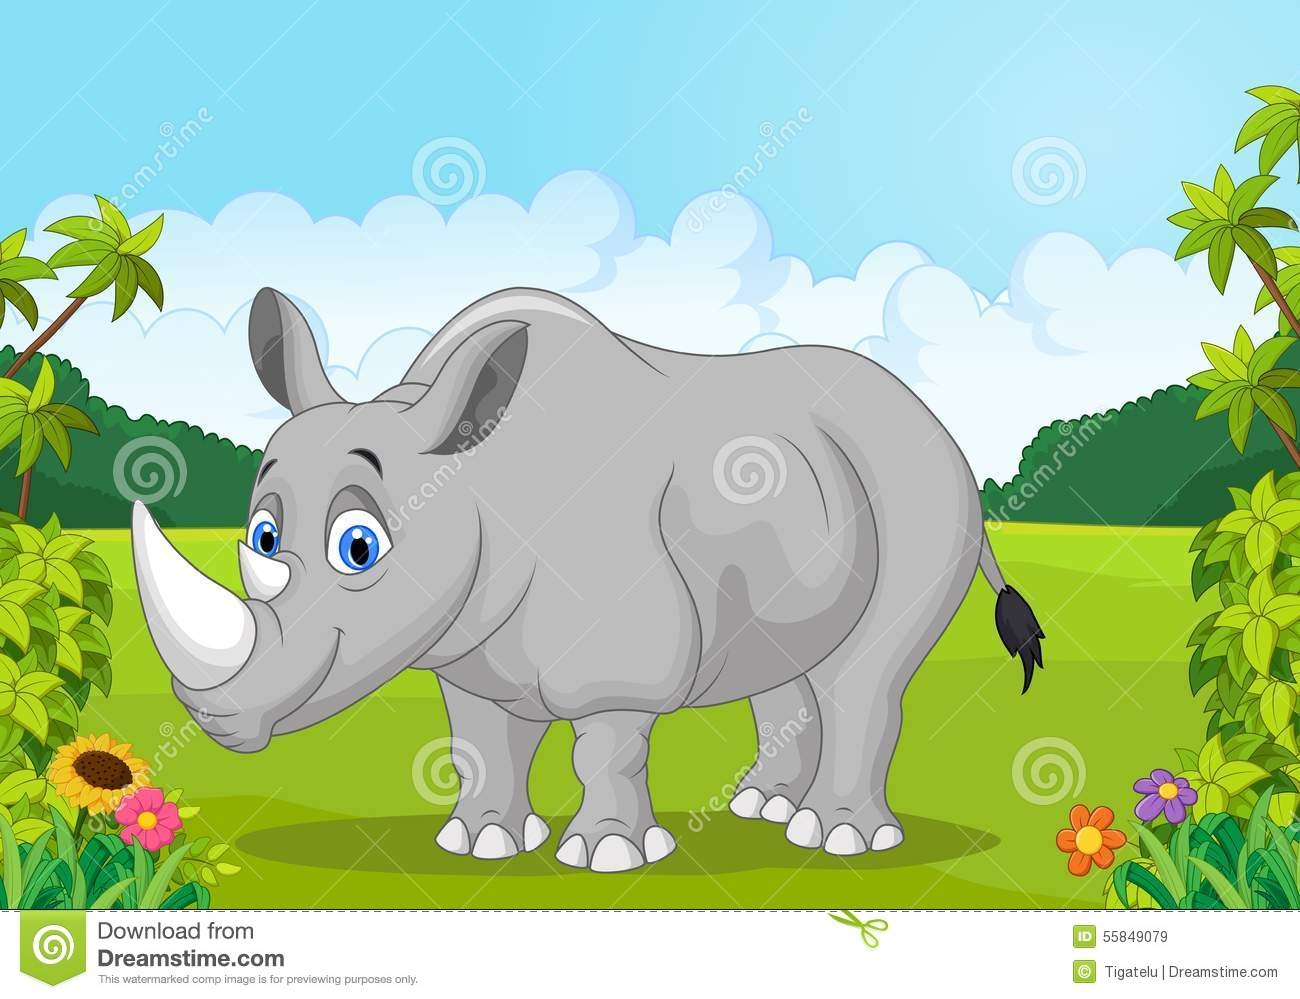 Носорог в зоопарке картинка для детей